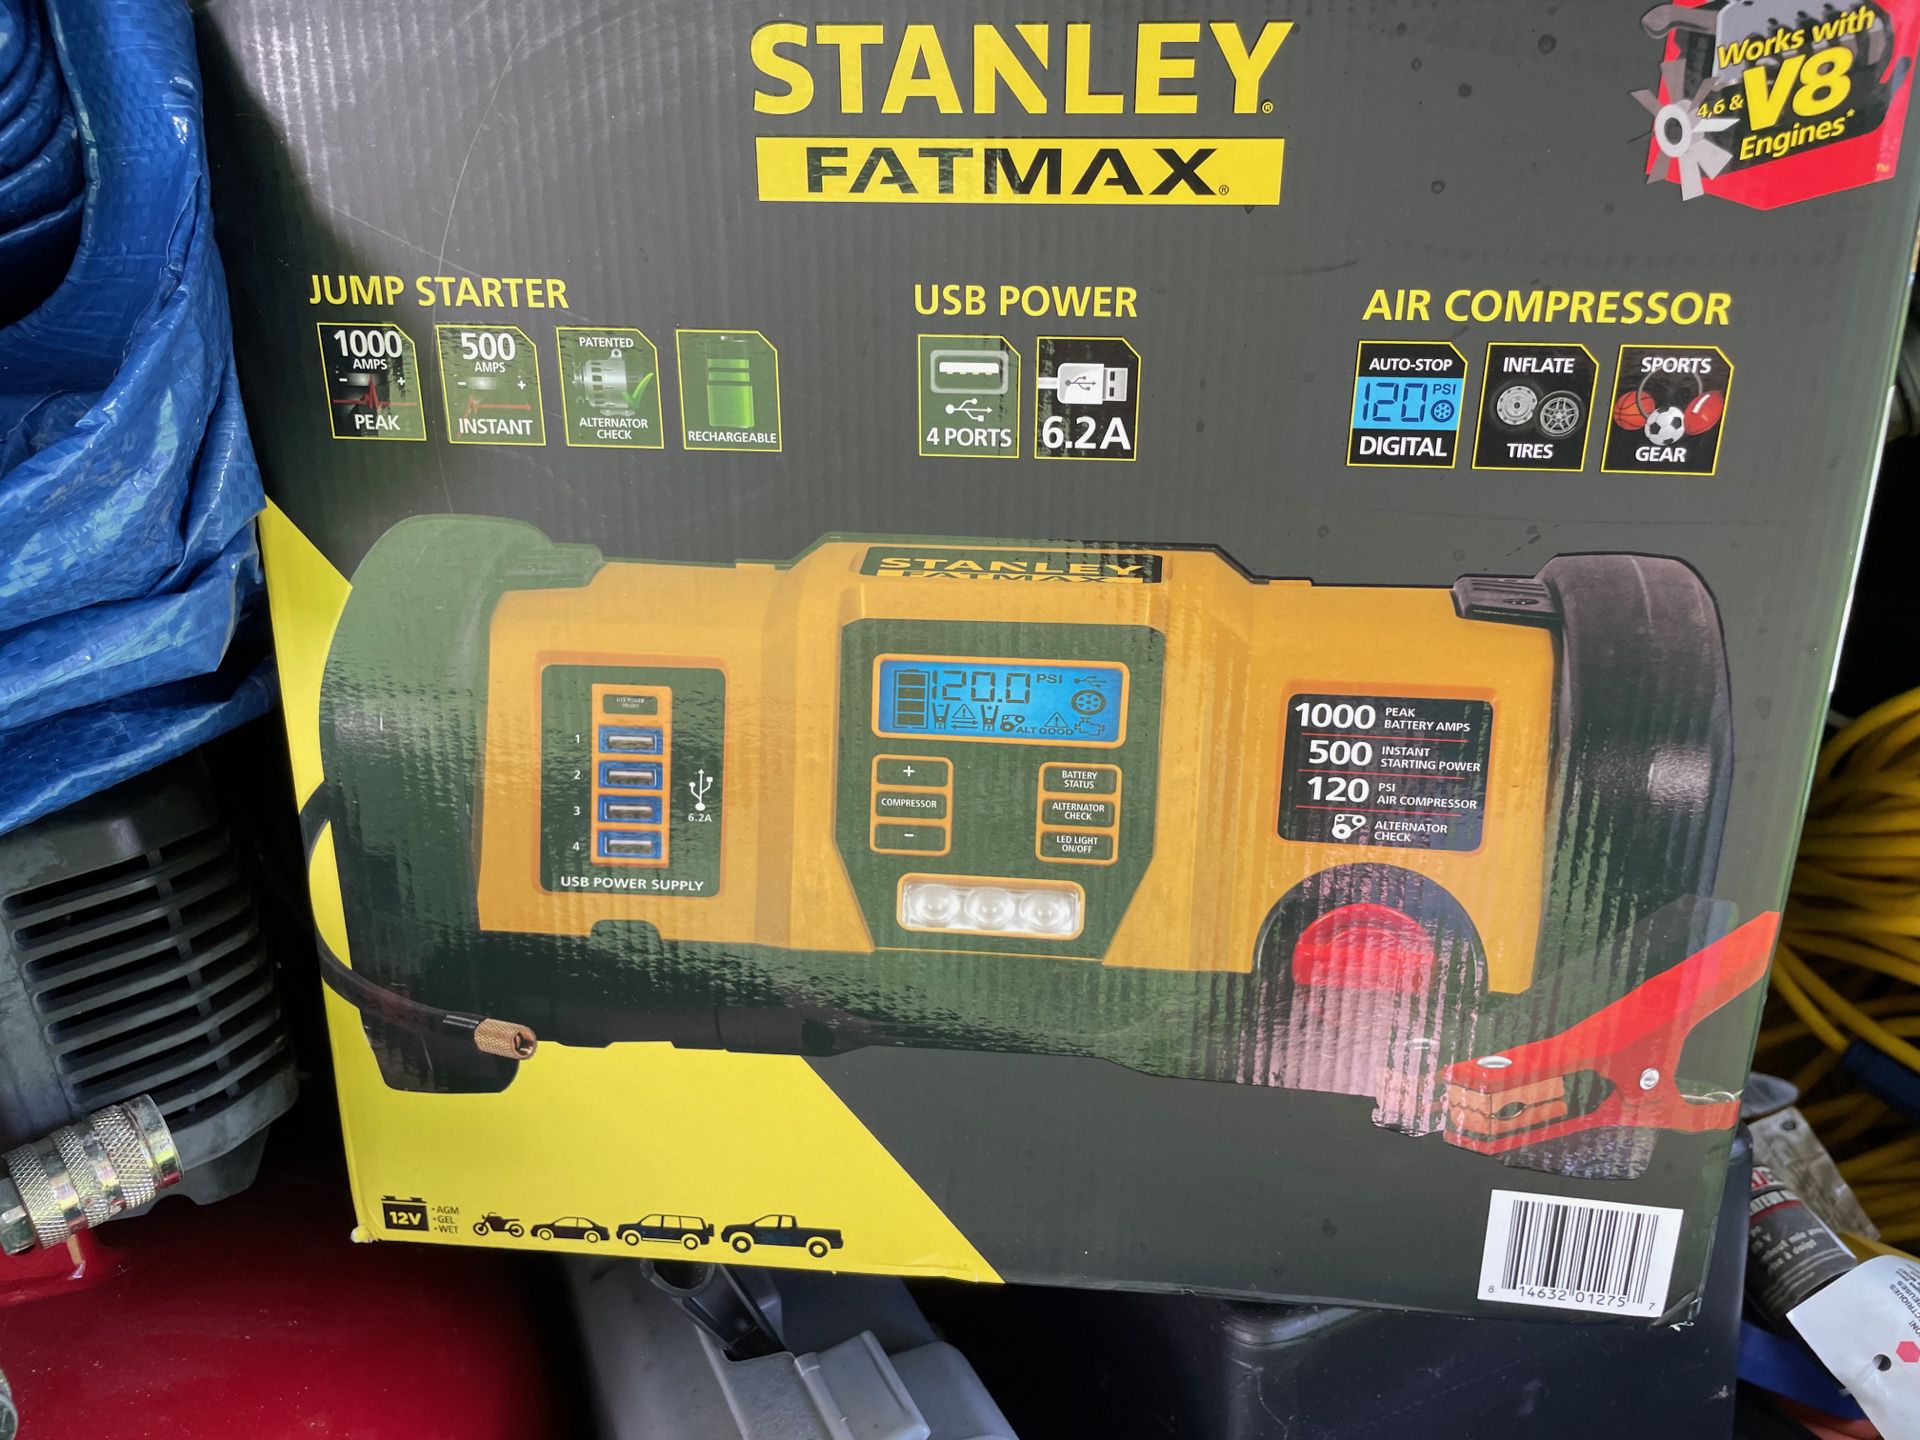 Stanley Fatmax Combo Air Compressor, Jumpstarter